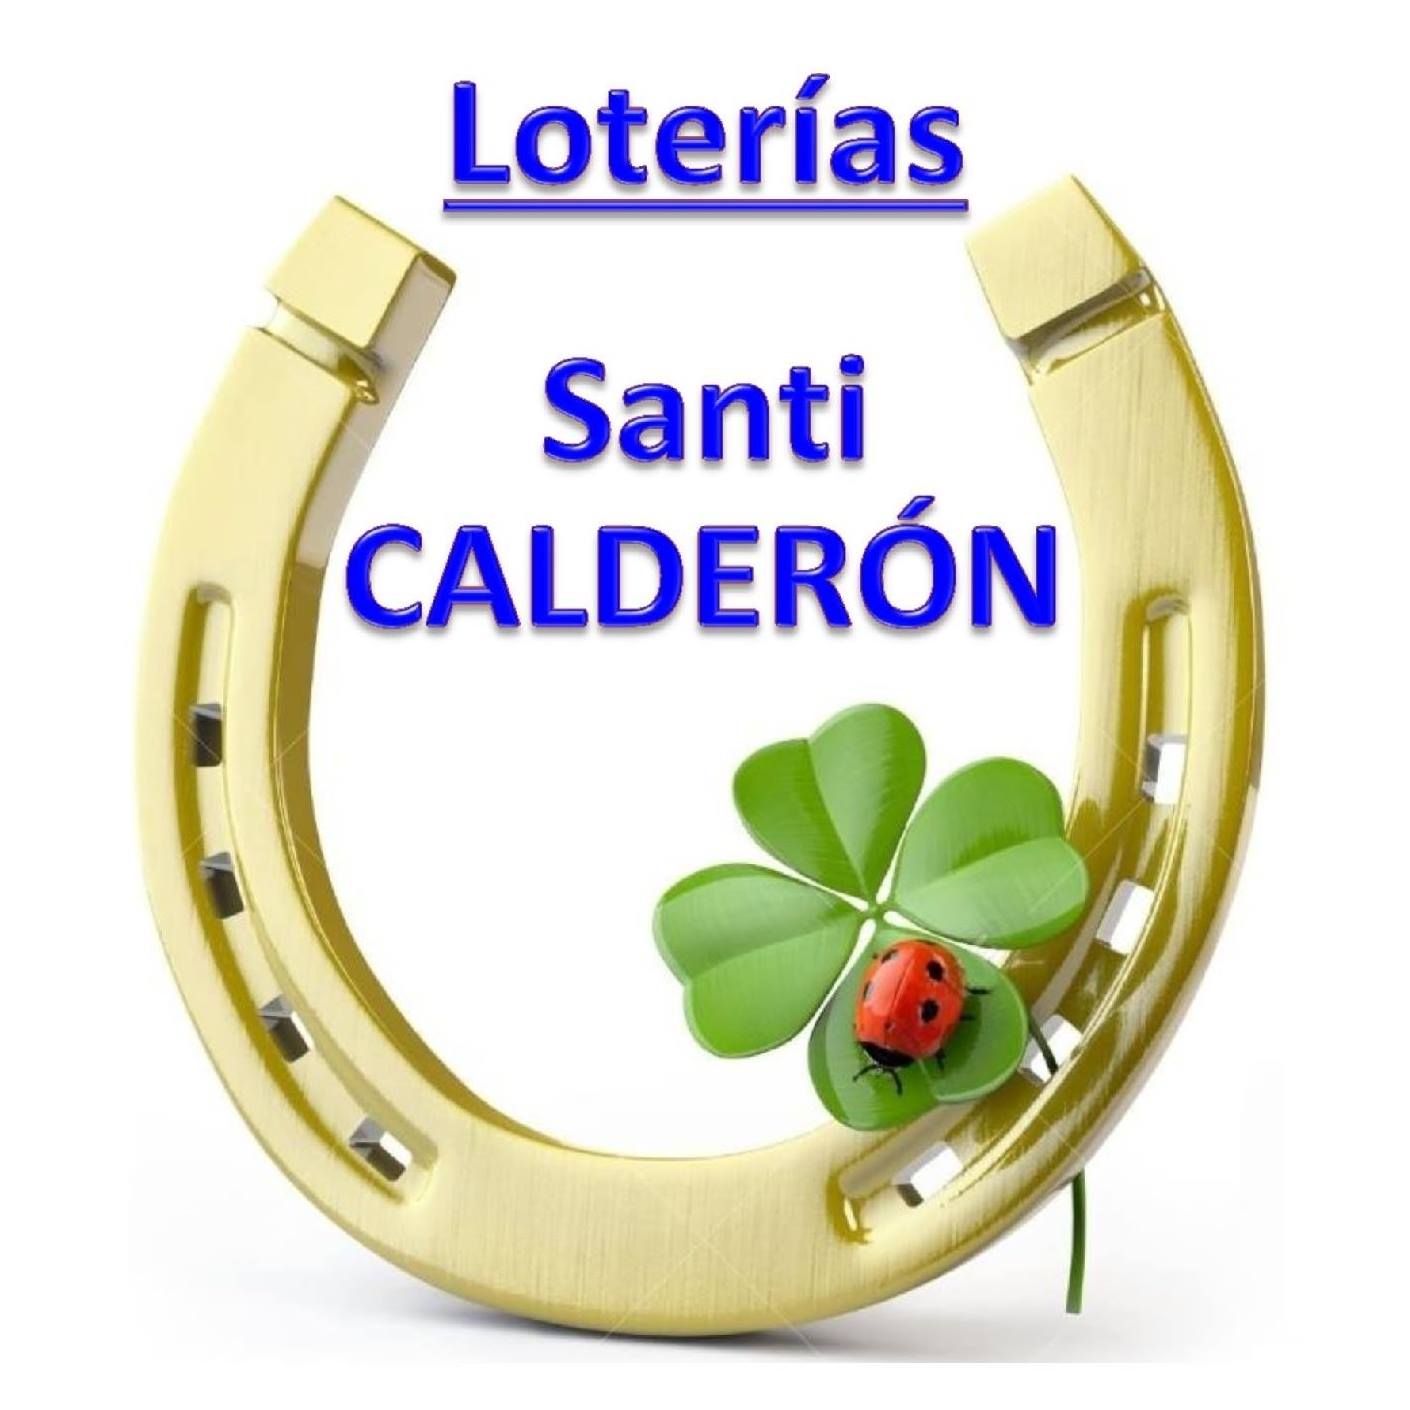 Loterias Santi calderon